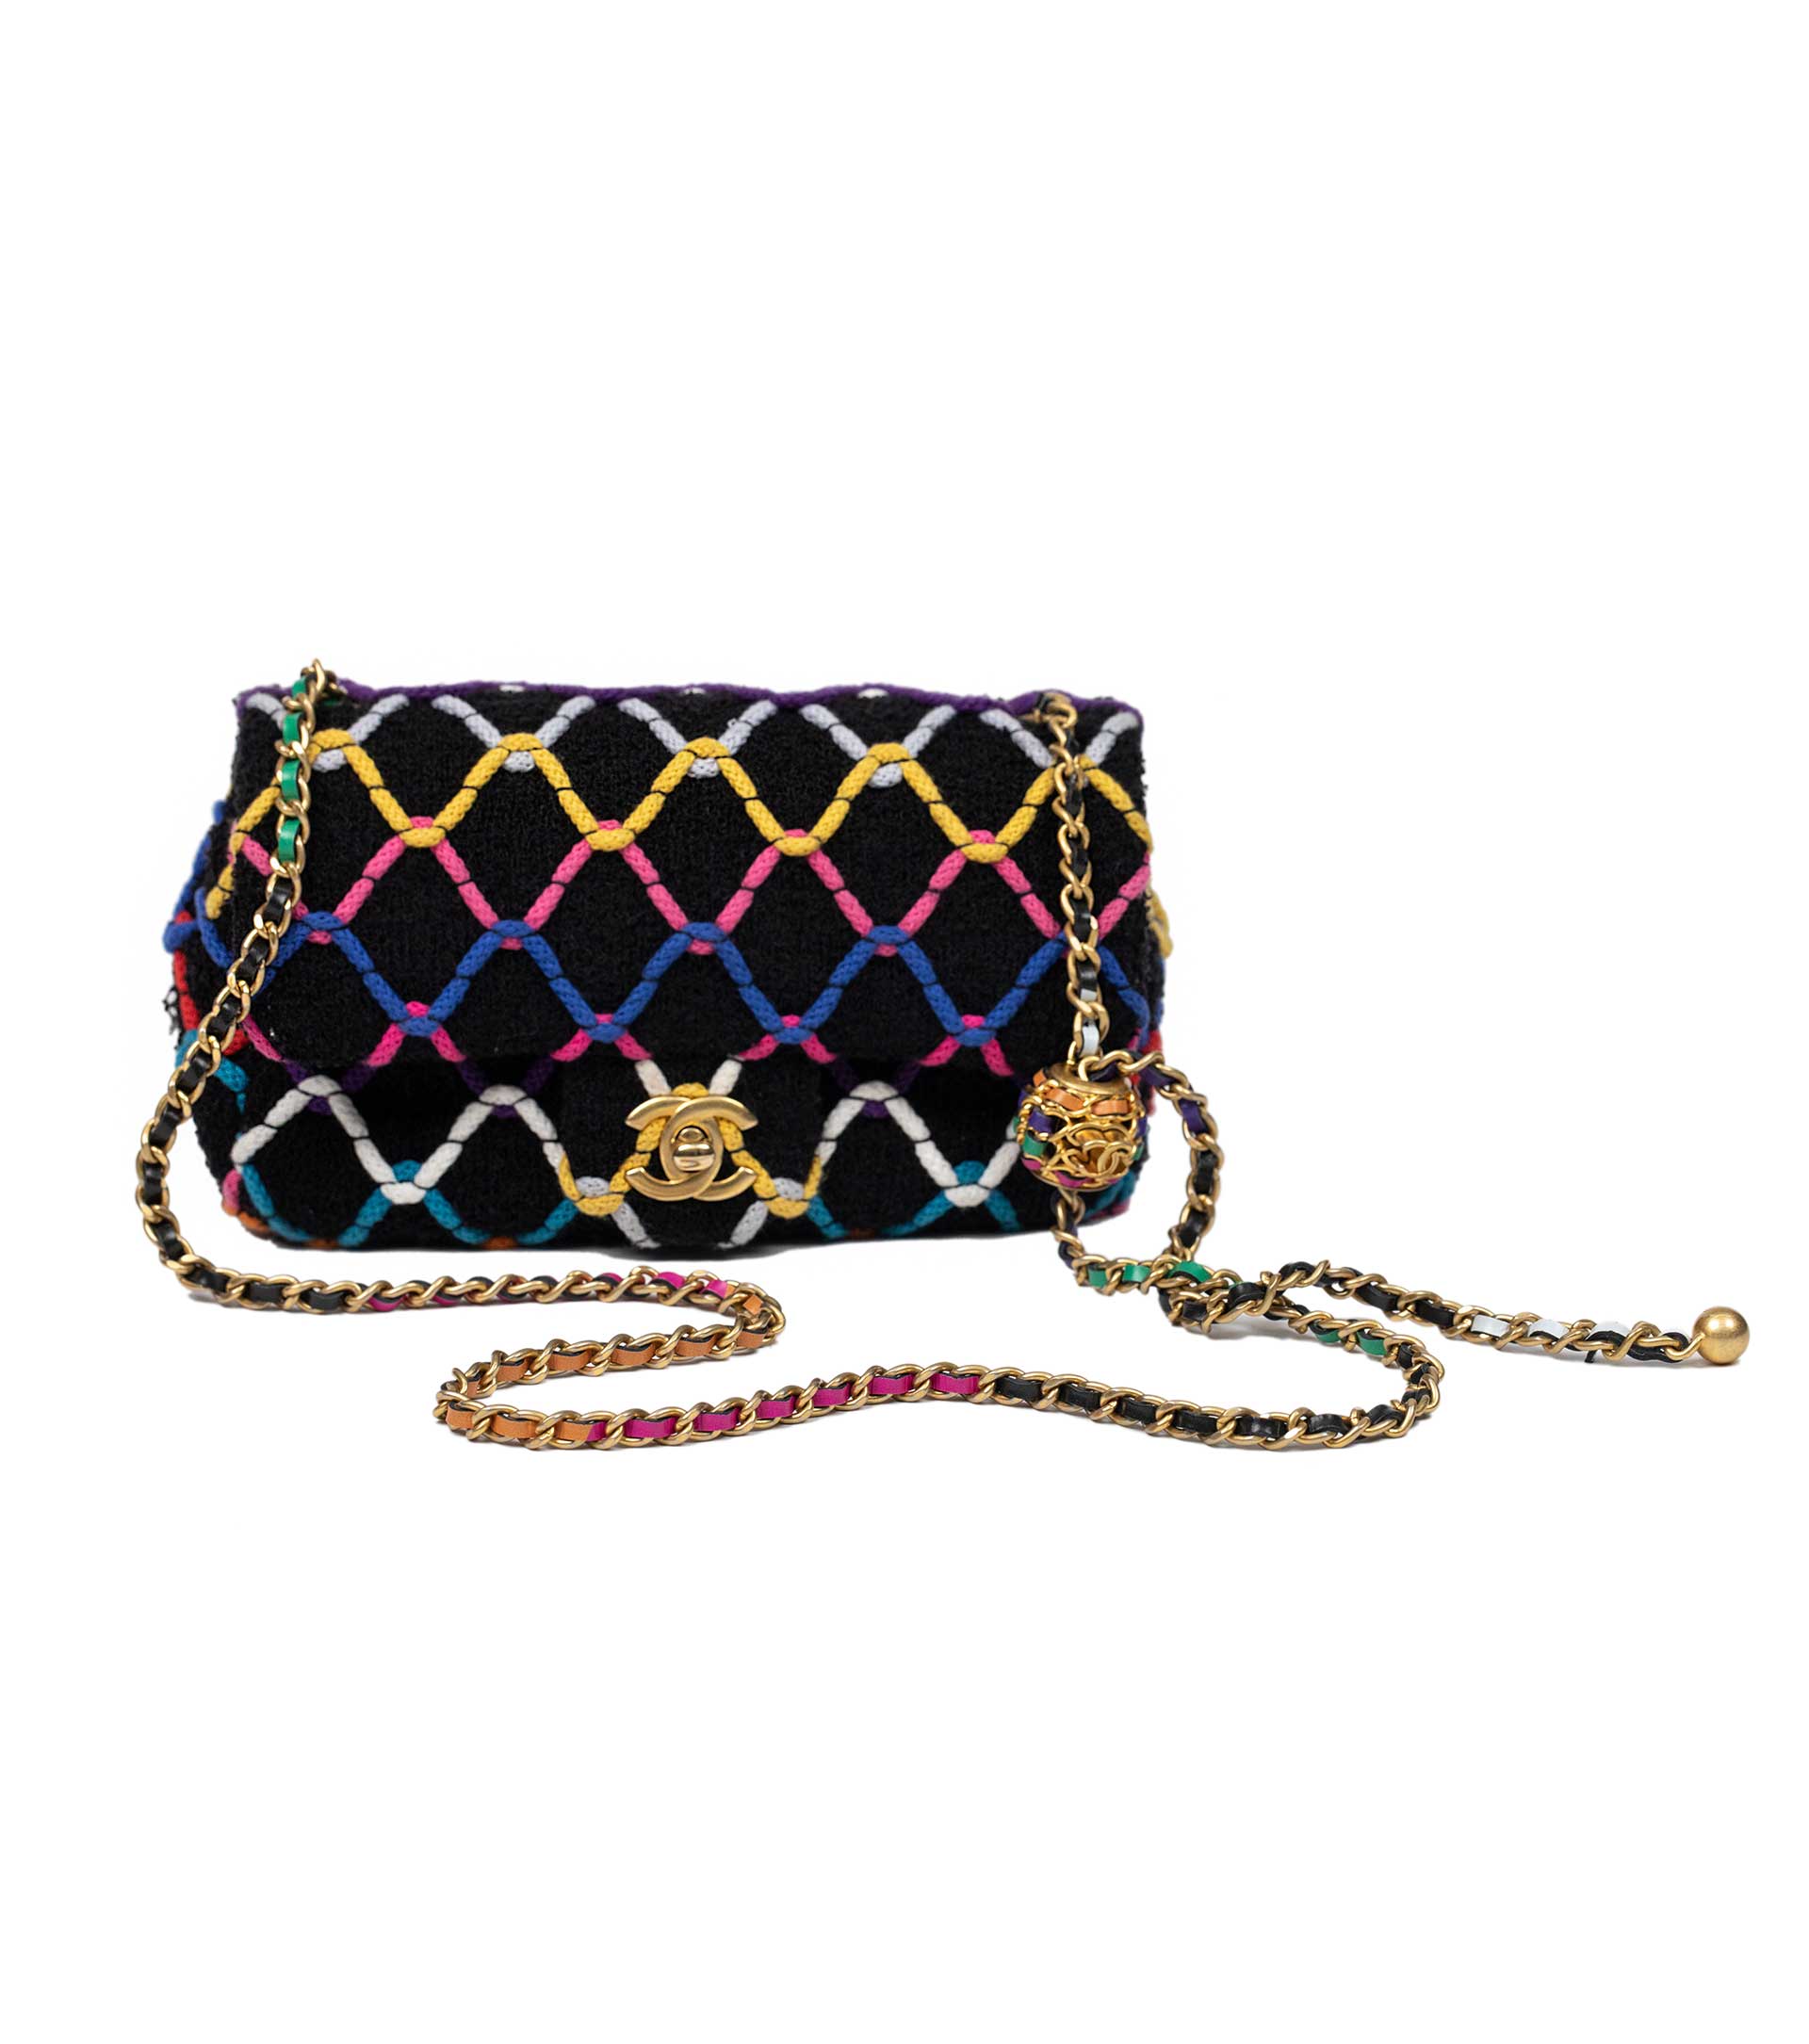 Chanel 19 Flap Tweed Handbag